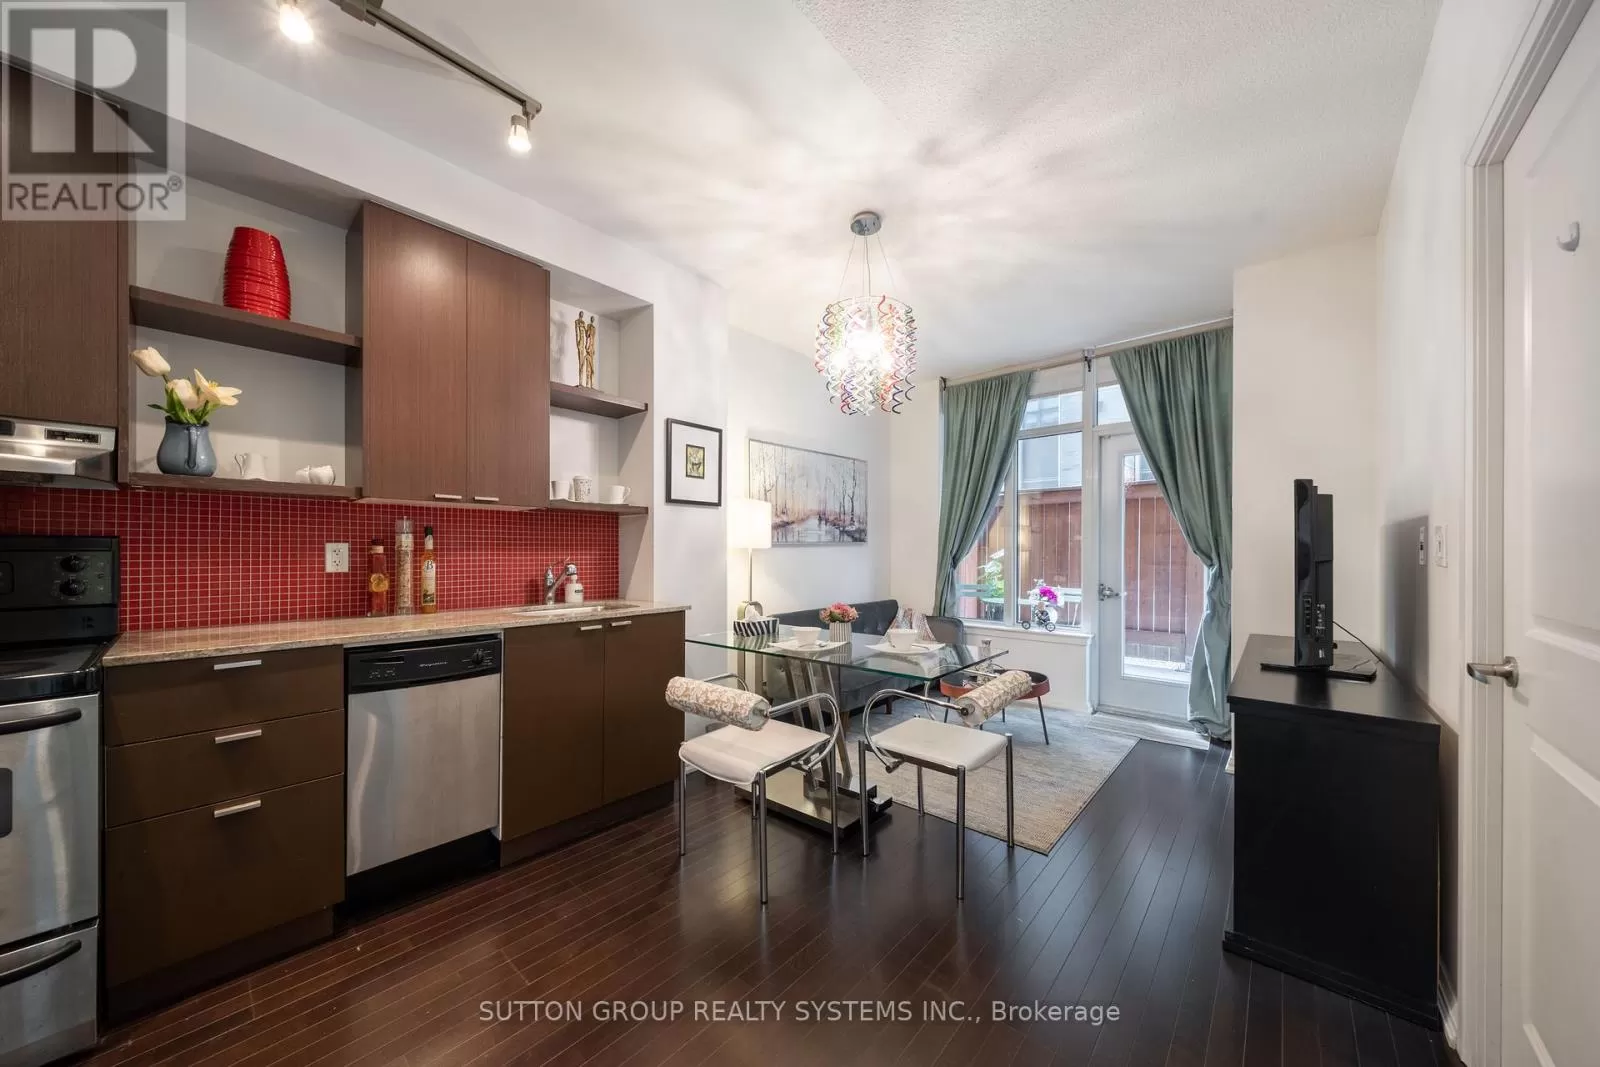 Apartment for rent: 106 - 35 Hayden Street, Toronto, Ontario M4Y 3C3